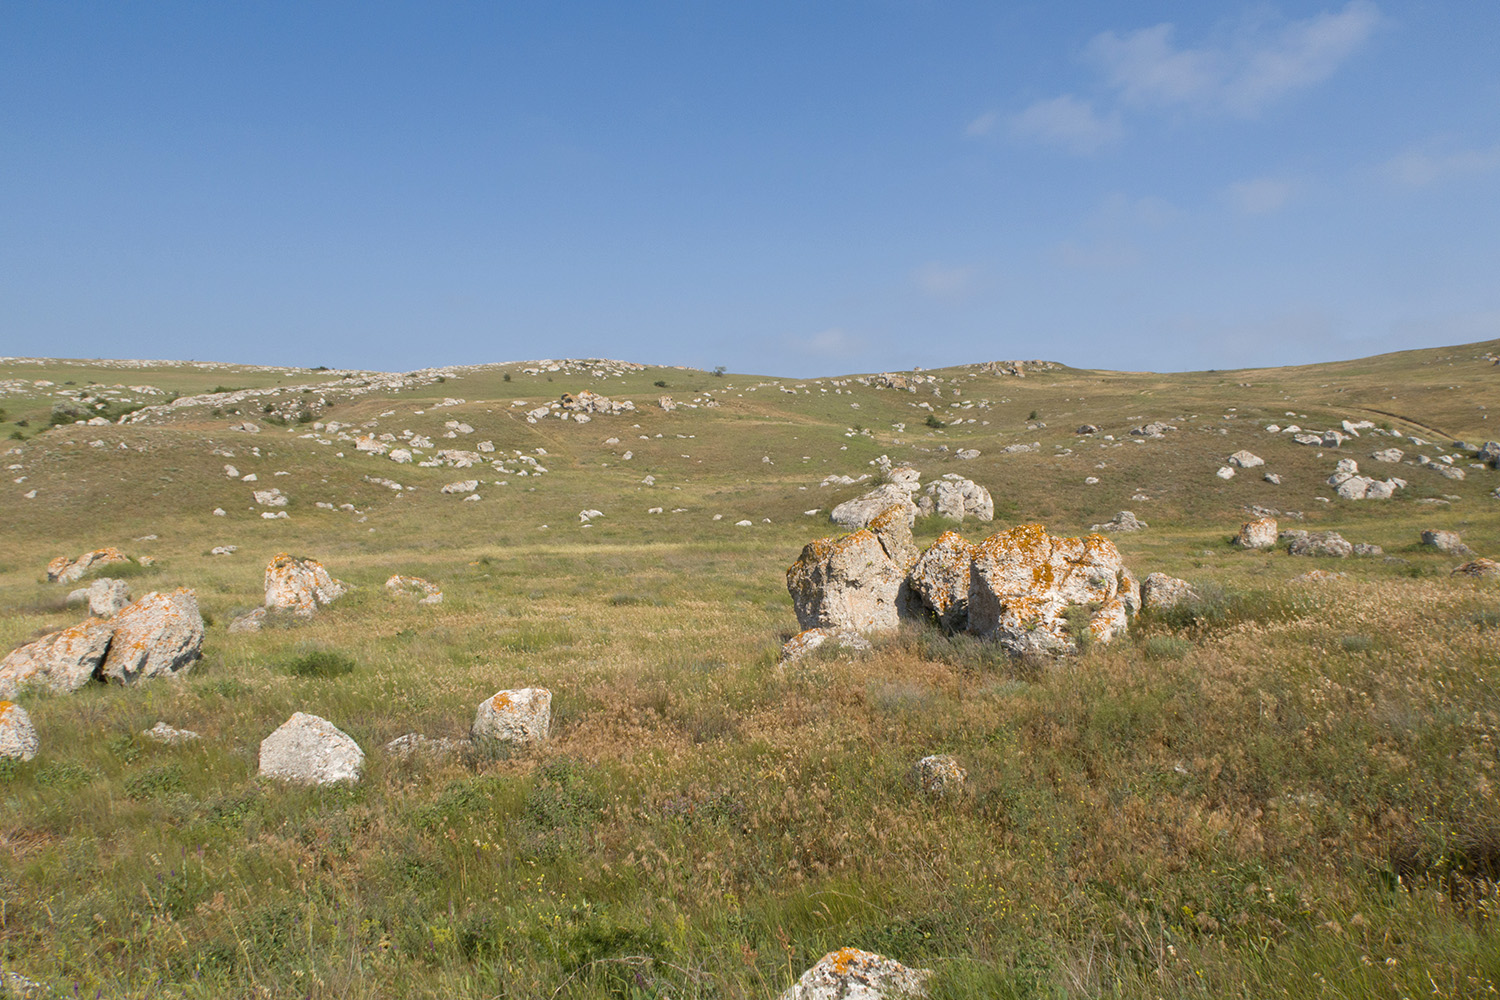 Казантип, image of landscape/habitat.